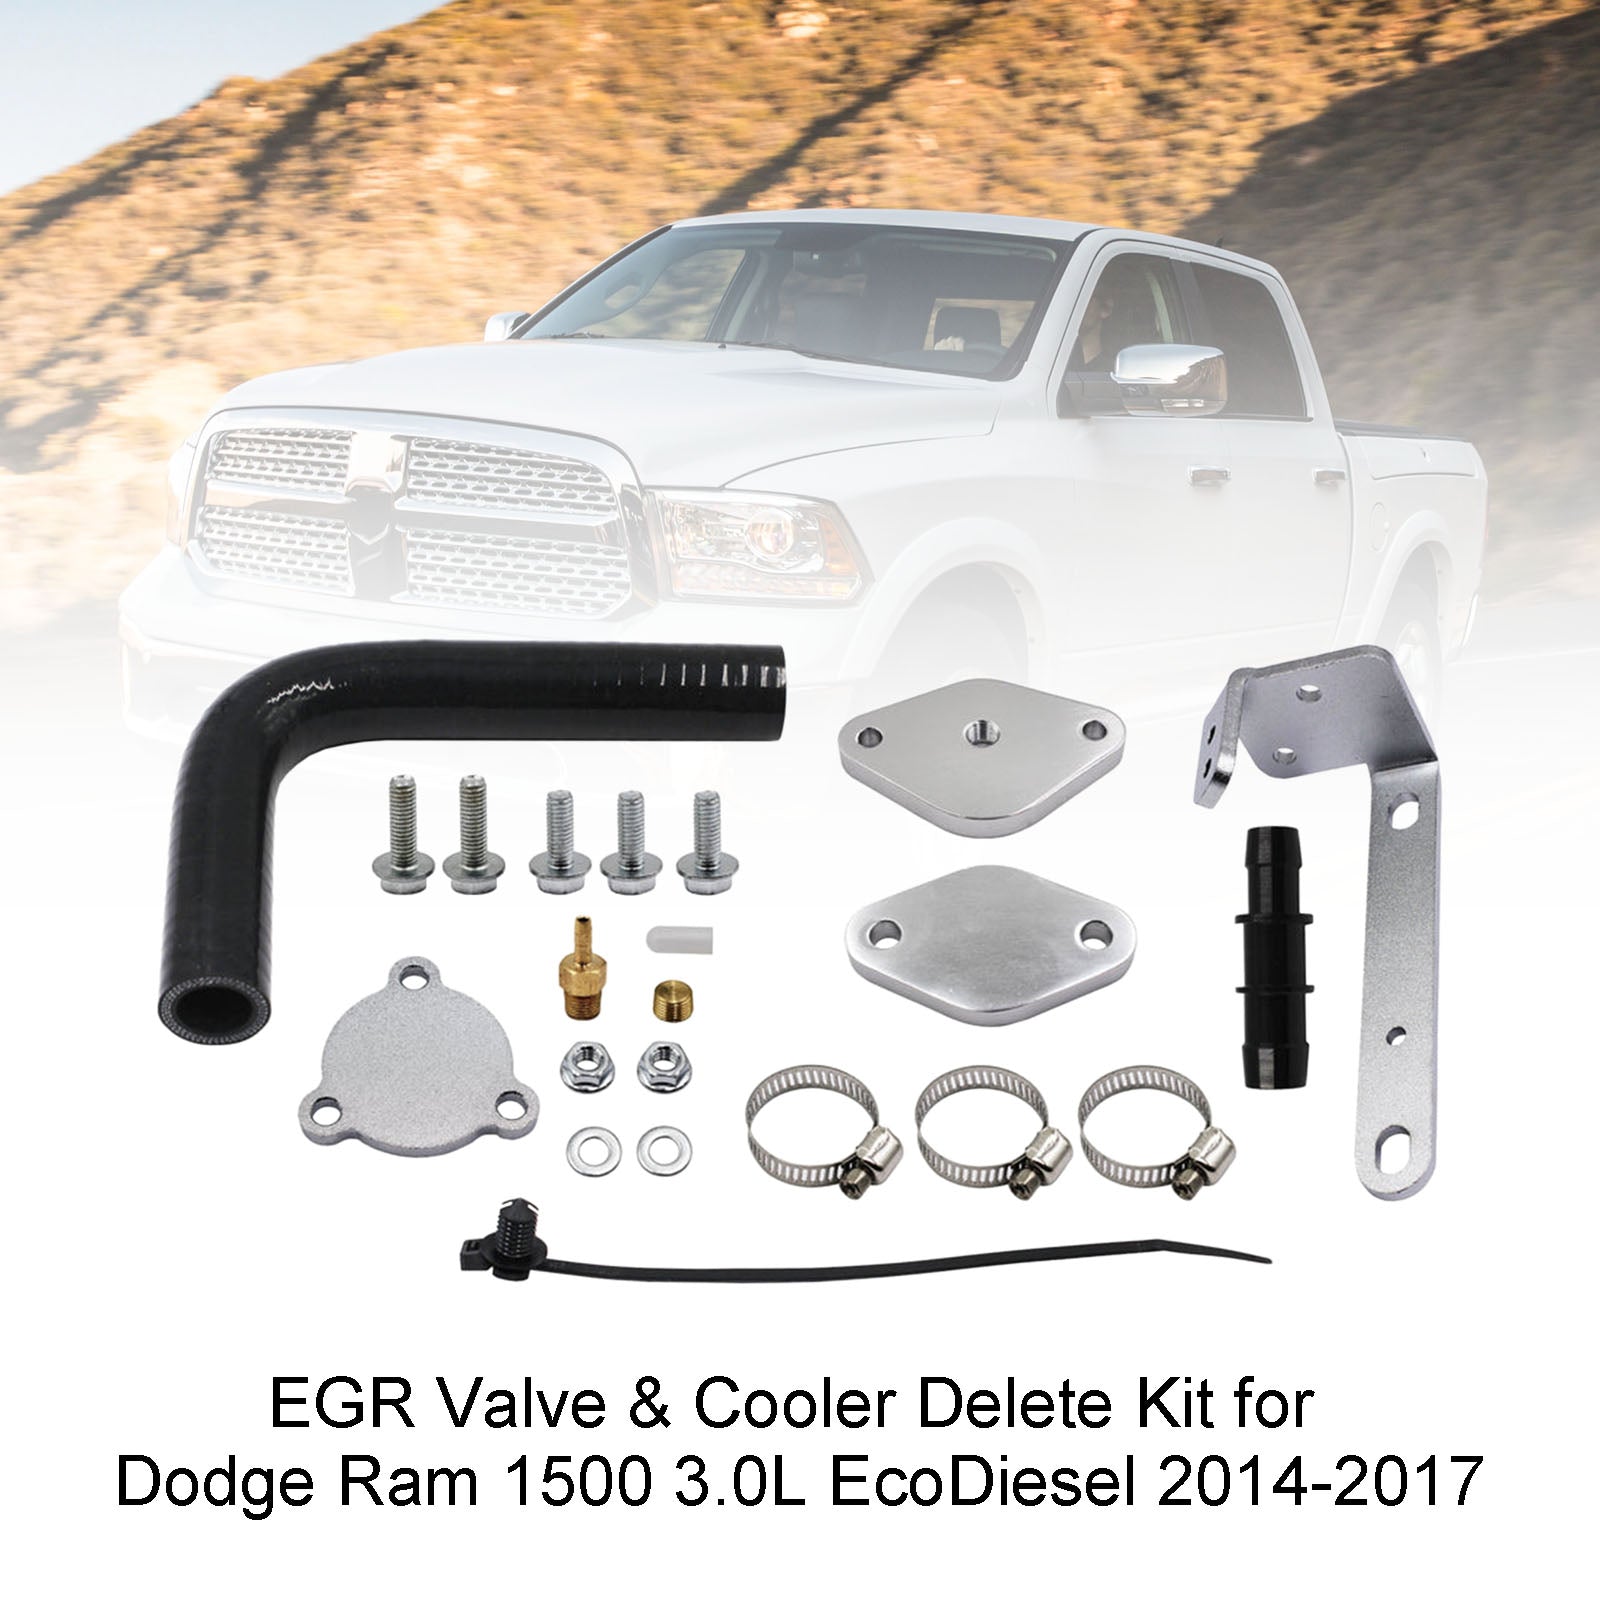 Dodge 2014-2017 Ram 1500 3.0L EcoDiesel EGR Valve & Cooler Delete Kit